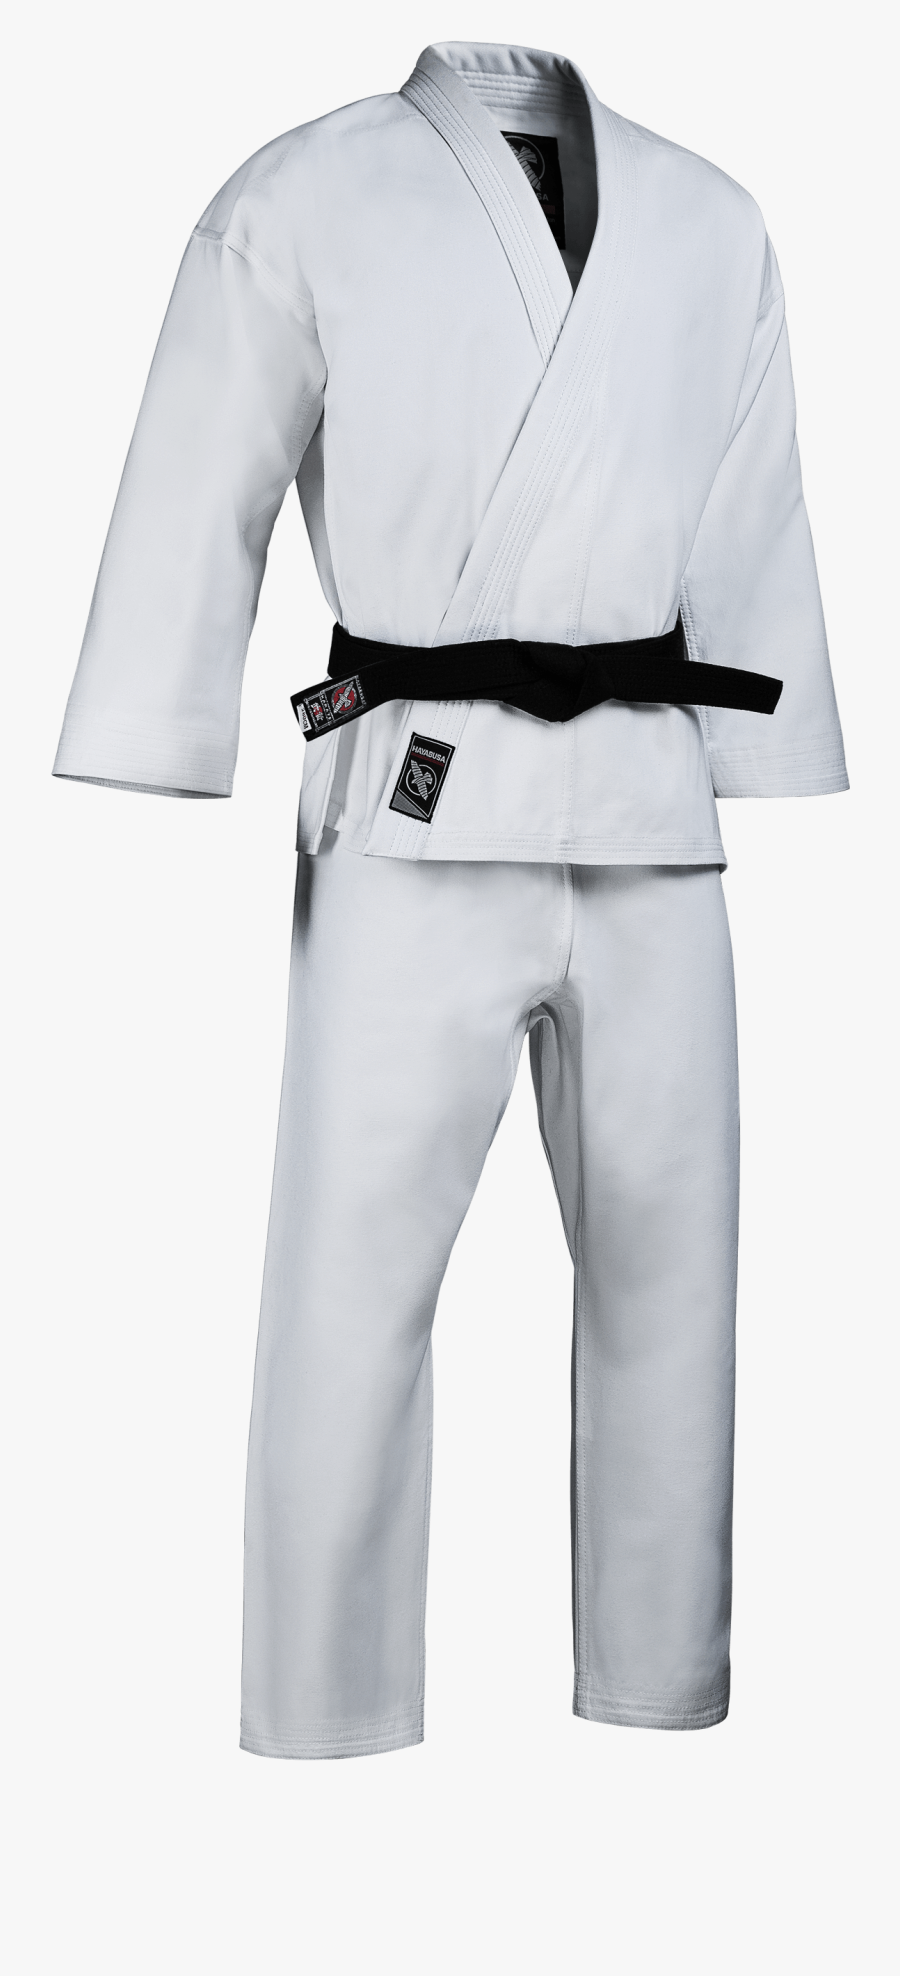 Karate Gi , Transparent Cartoons - Karate Uniform, Transparent Clipart